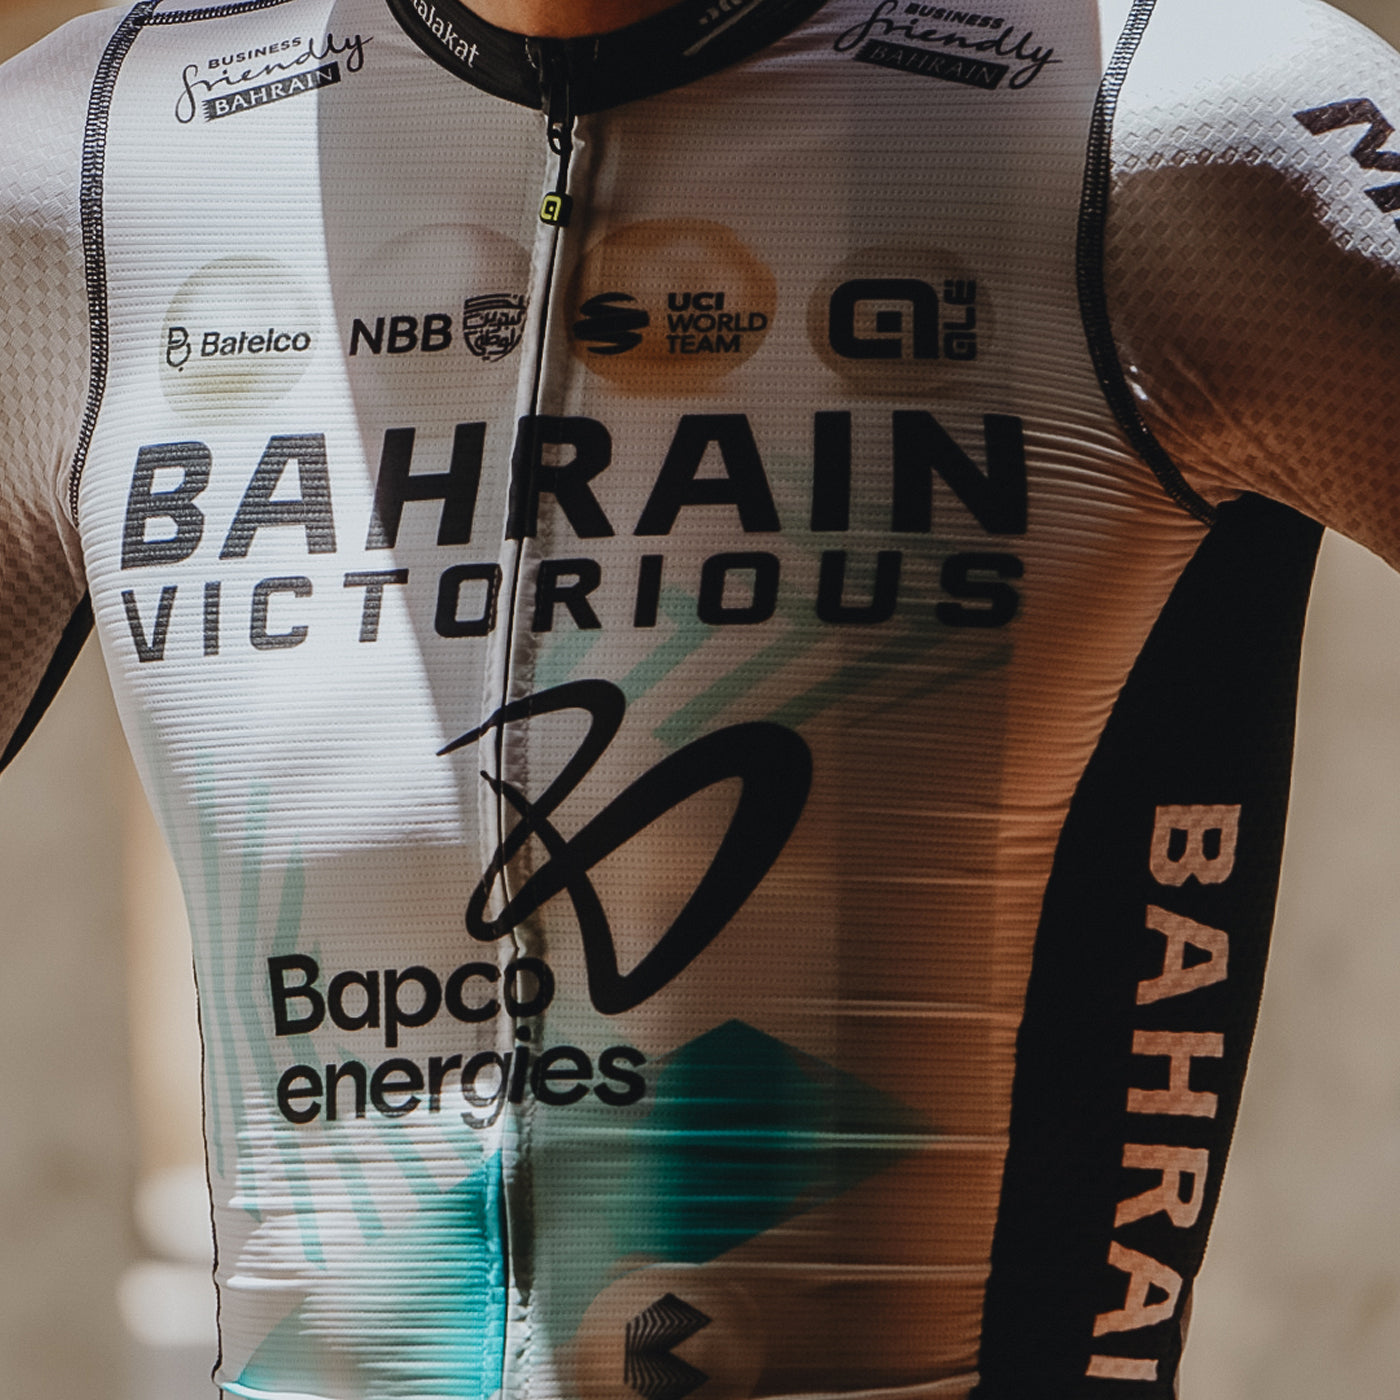 Bahrain Victorious 2023 PRS jersey - Tour de France